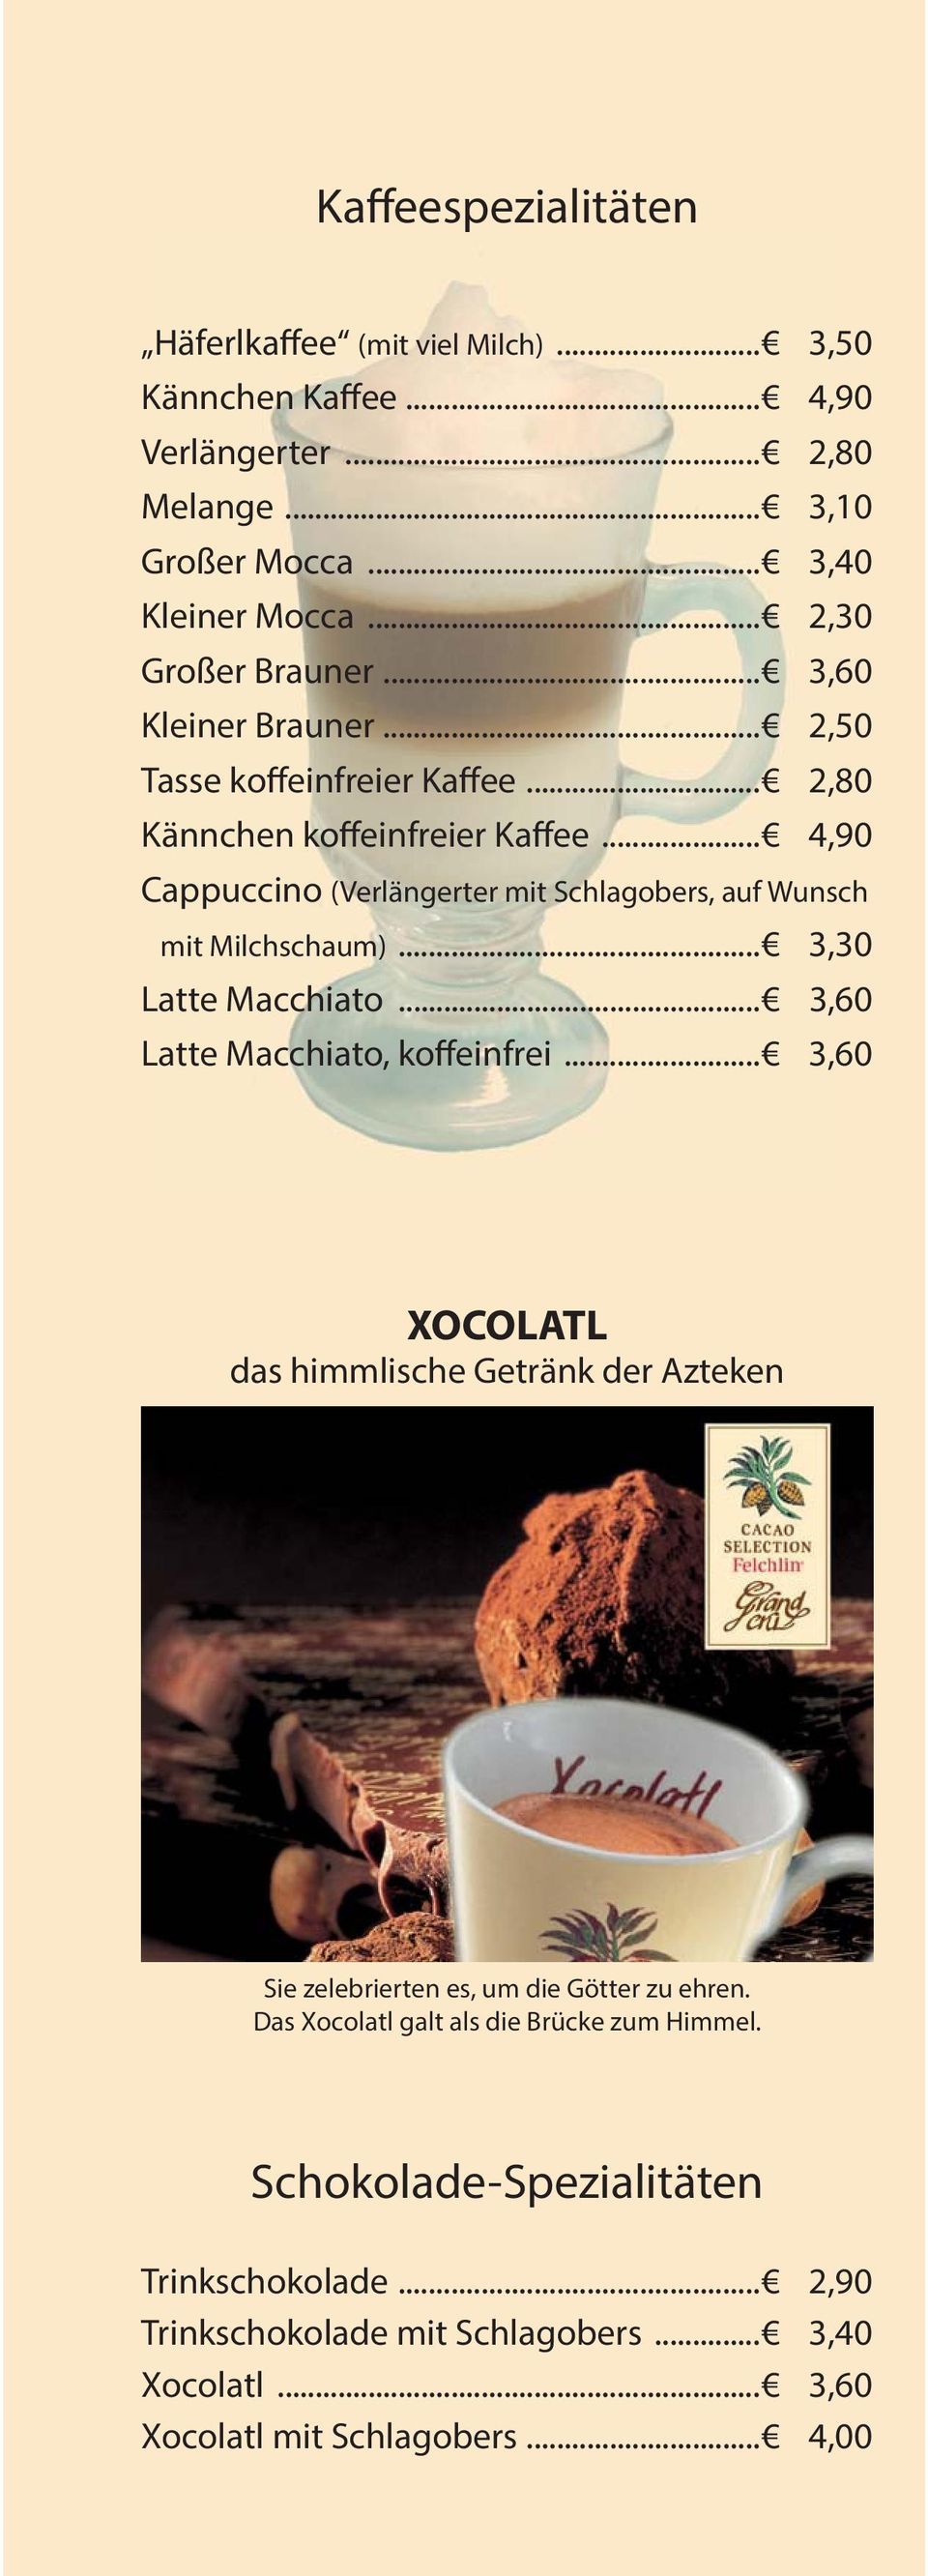 .. 4,90 Cappuccino (Verlängerter mit Schlagobers, auf Wunsch mit Milchschaum)... 3,30 Latte Macchiato... 3,60 Latte Macchiato, koffeinfrei.